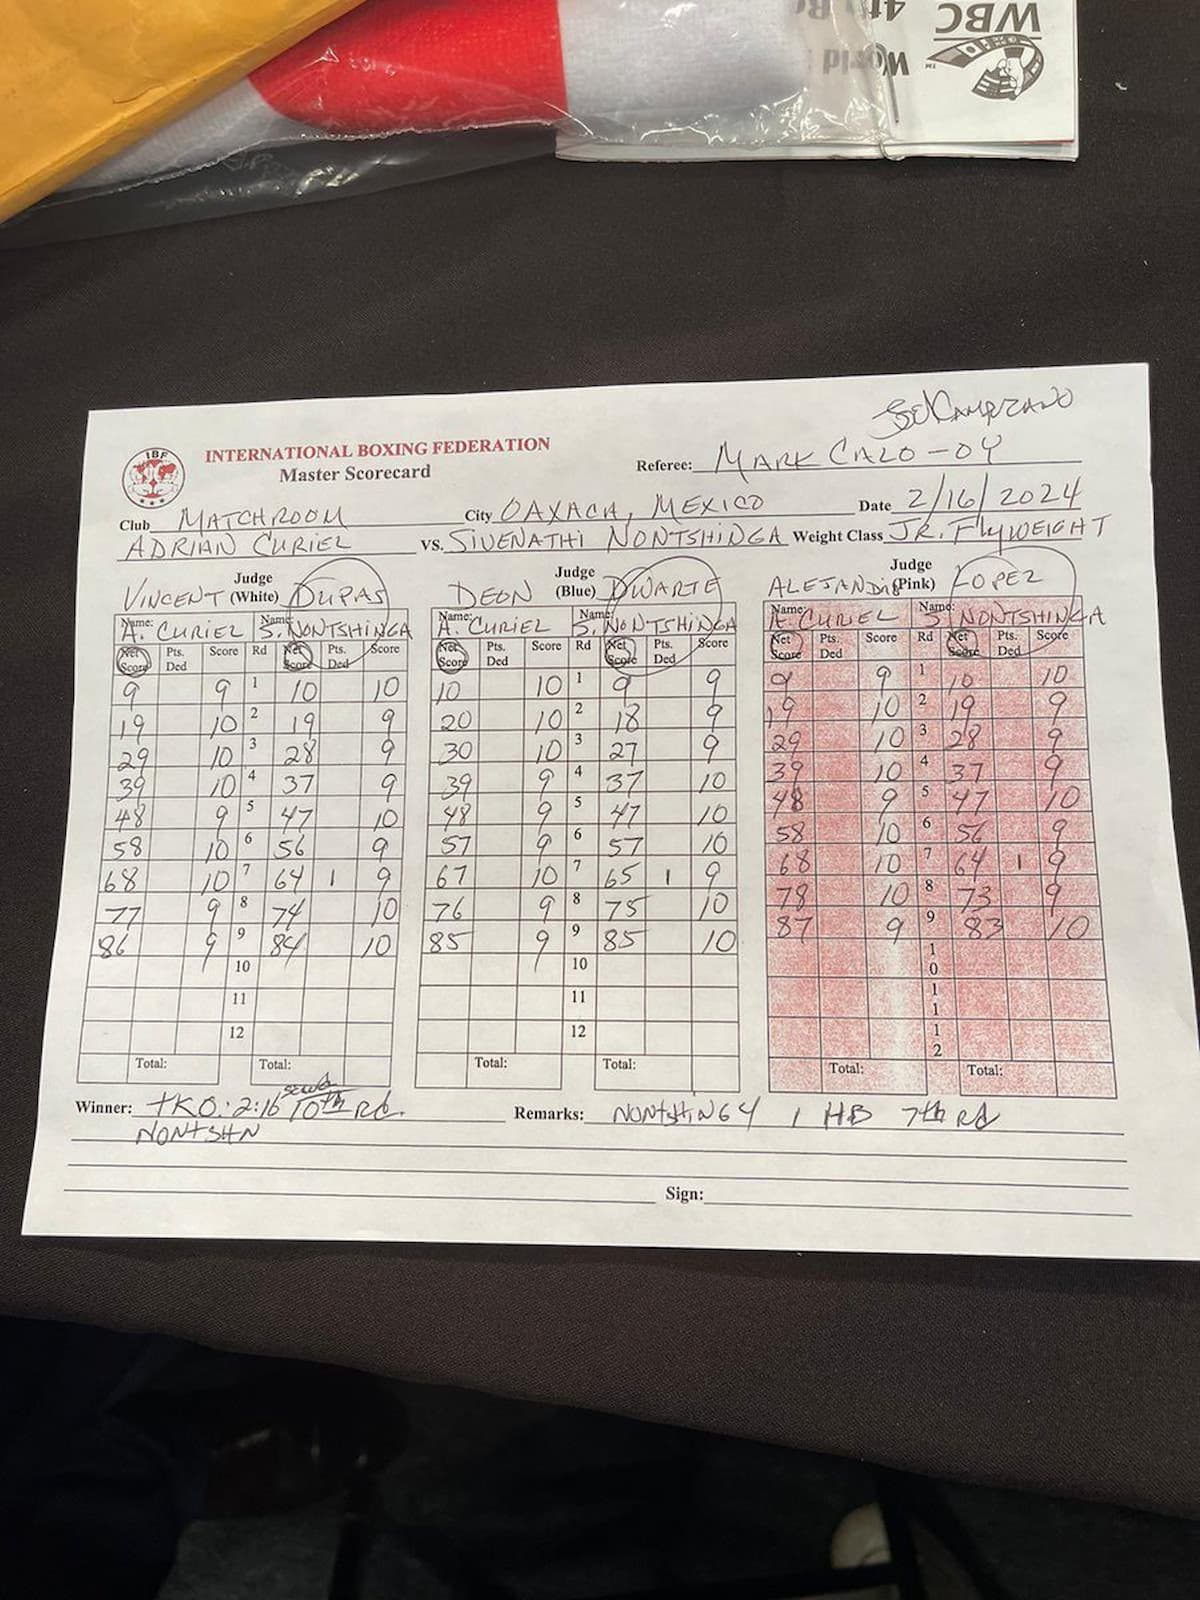 Adrian Curiel vs Sivenathi Nontshinga 2 scorecards